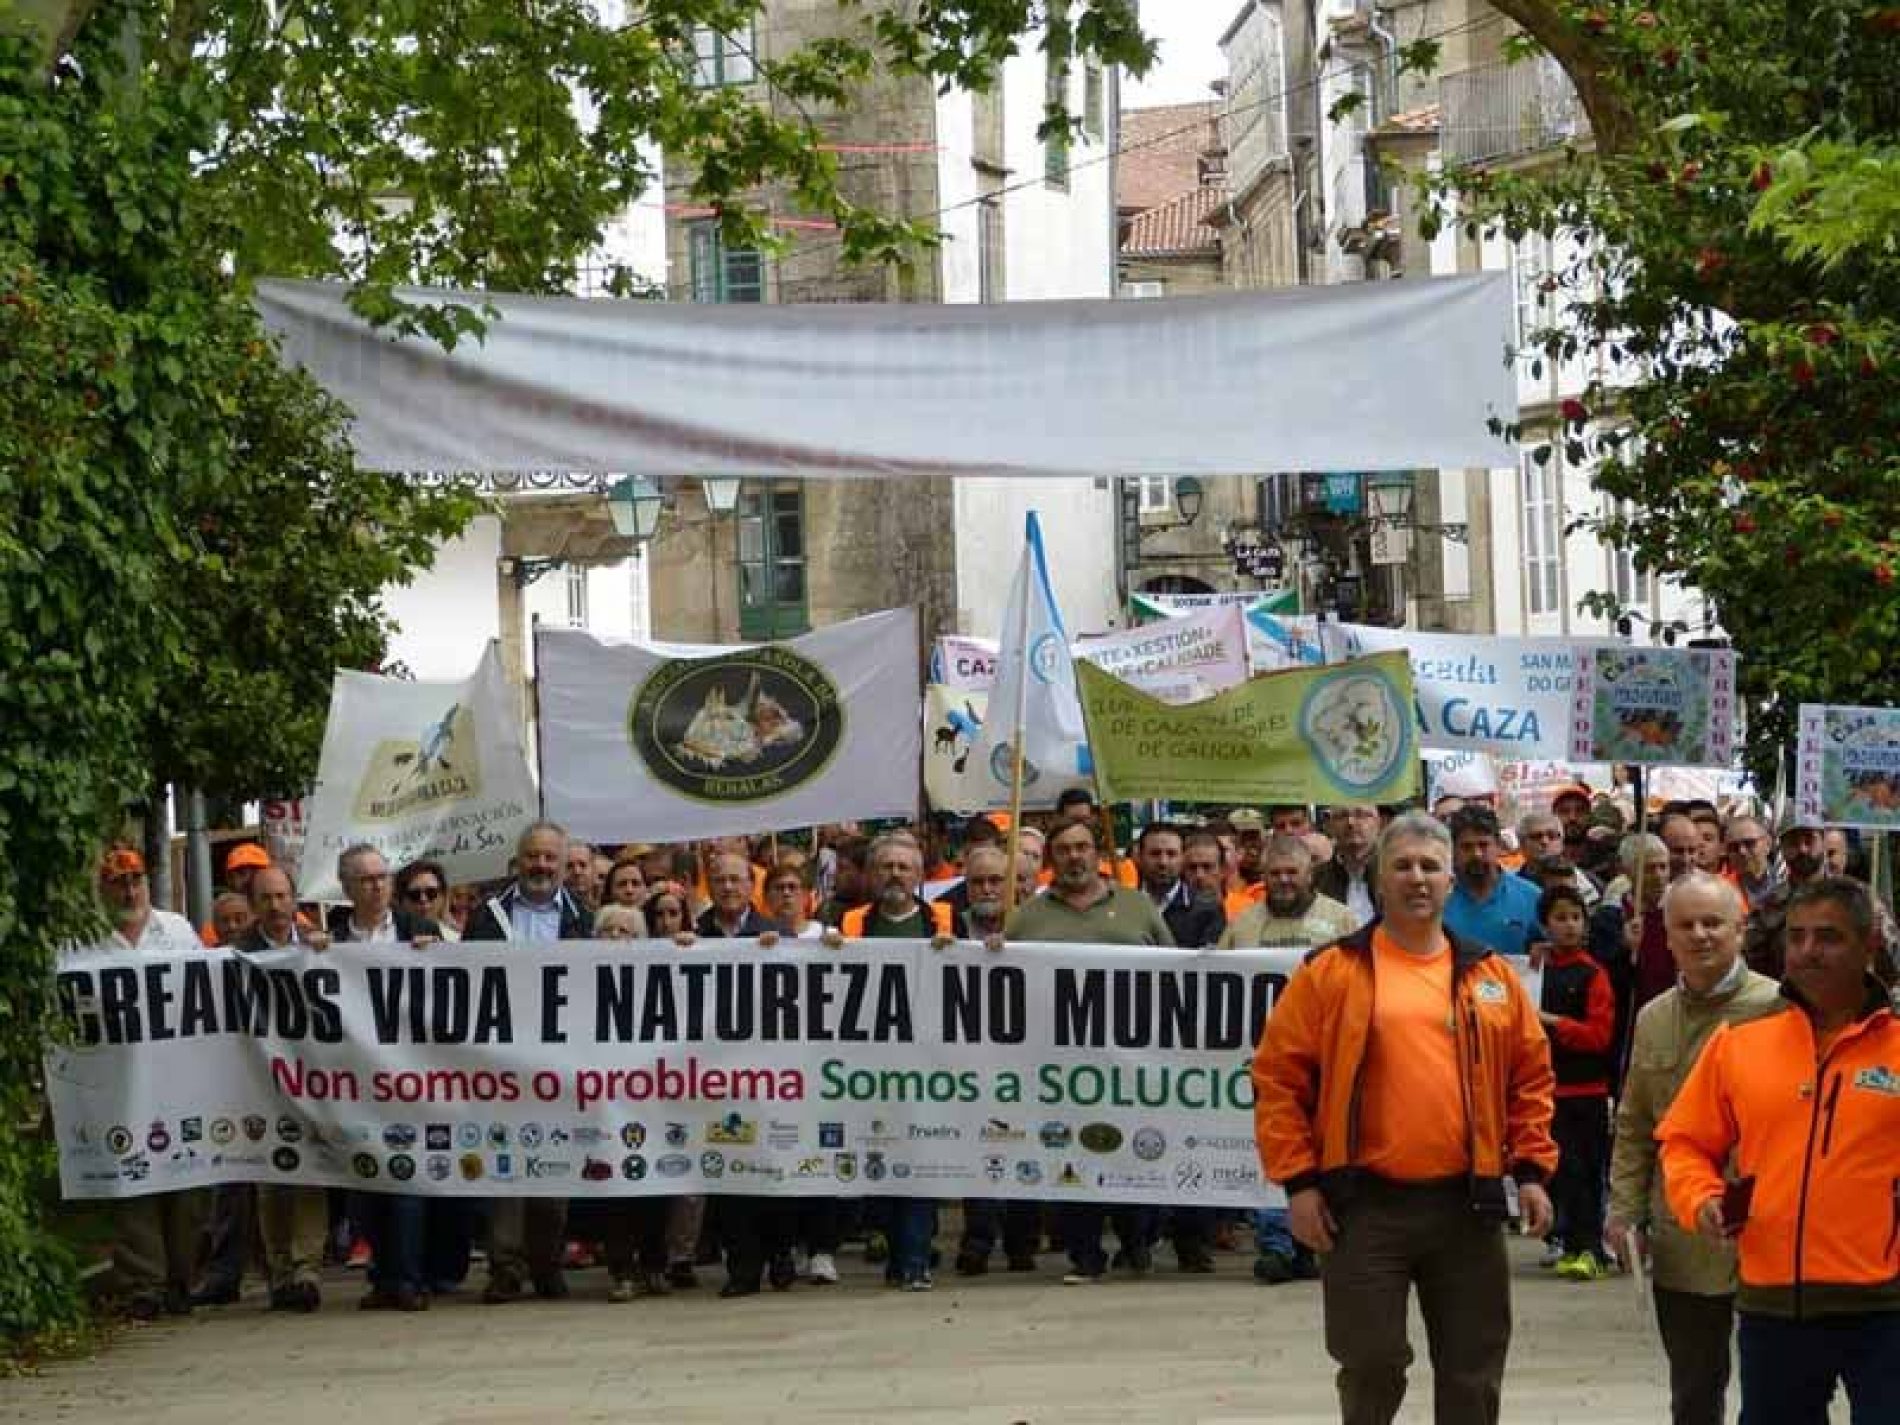 El mundo rural gallego quiere que le escuchen